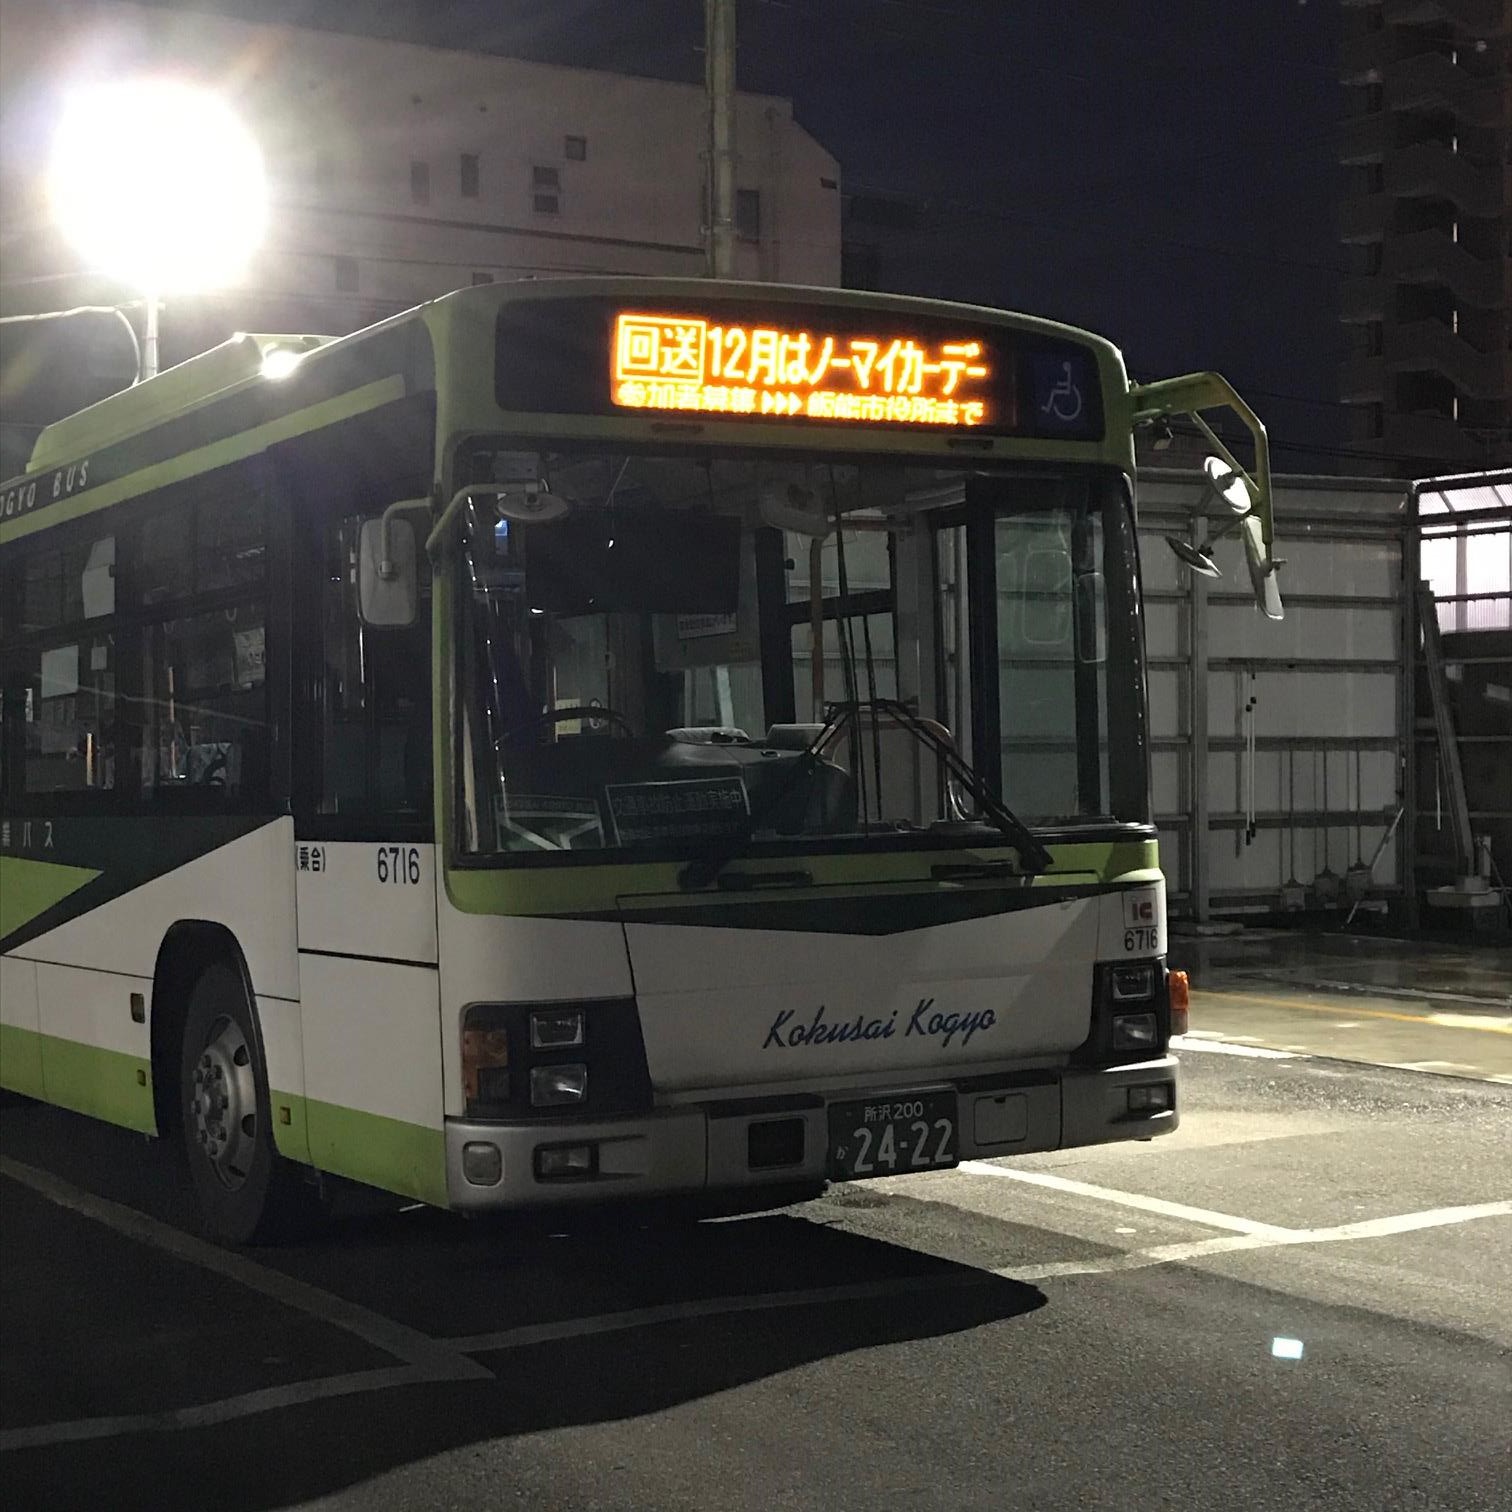 電光掲示板に「12月はノーマイカーデー」と表示されたバスの写真